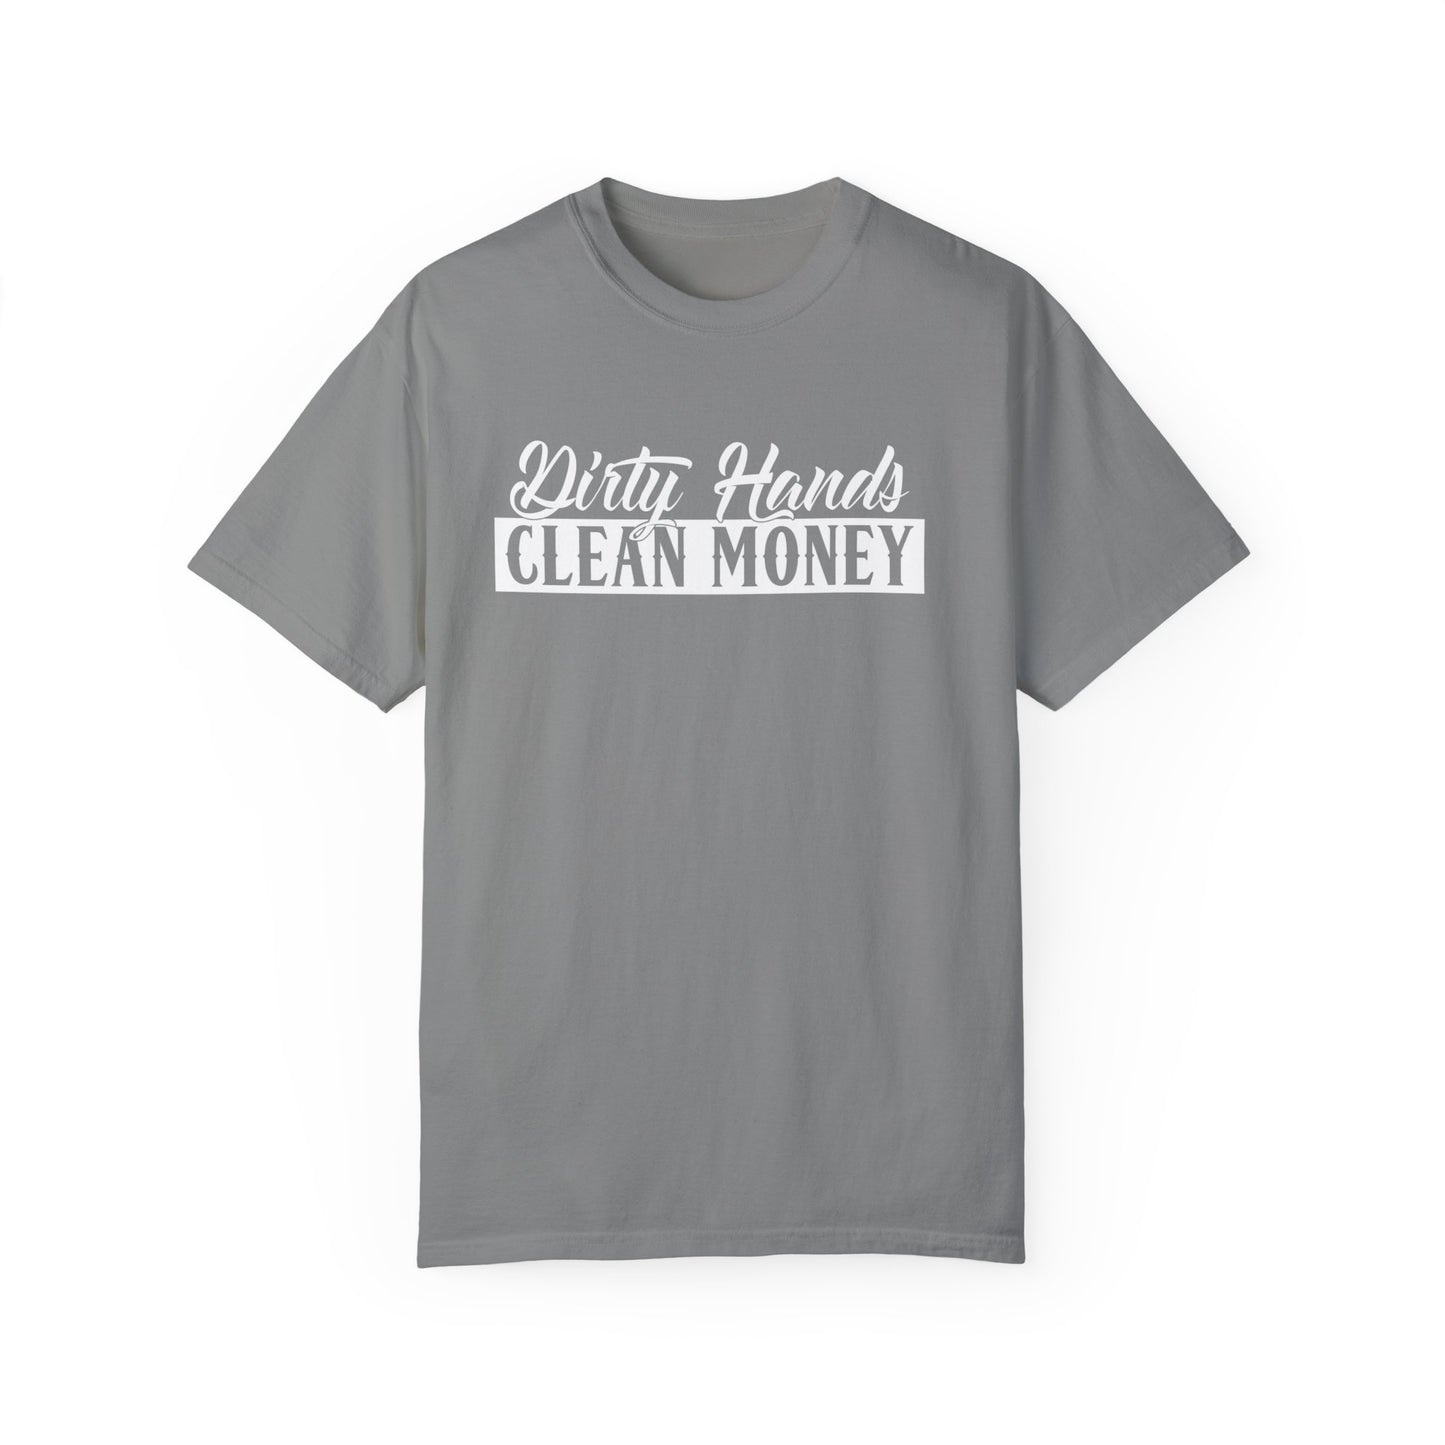 Dirty hands Clean Money T-shirt